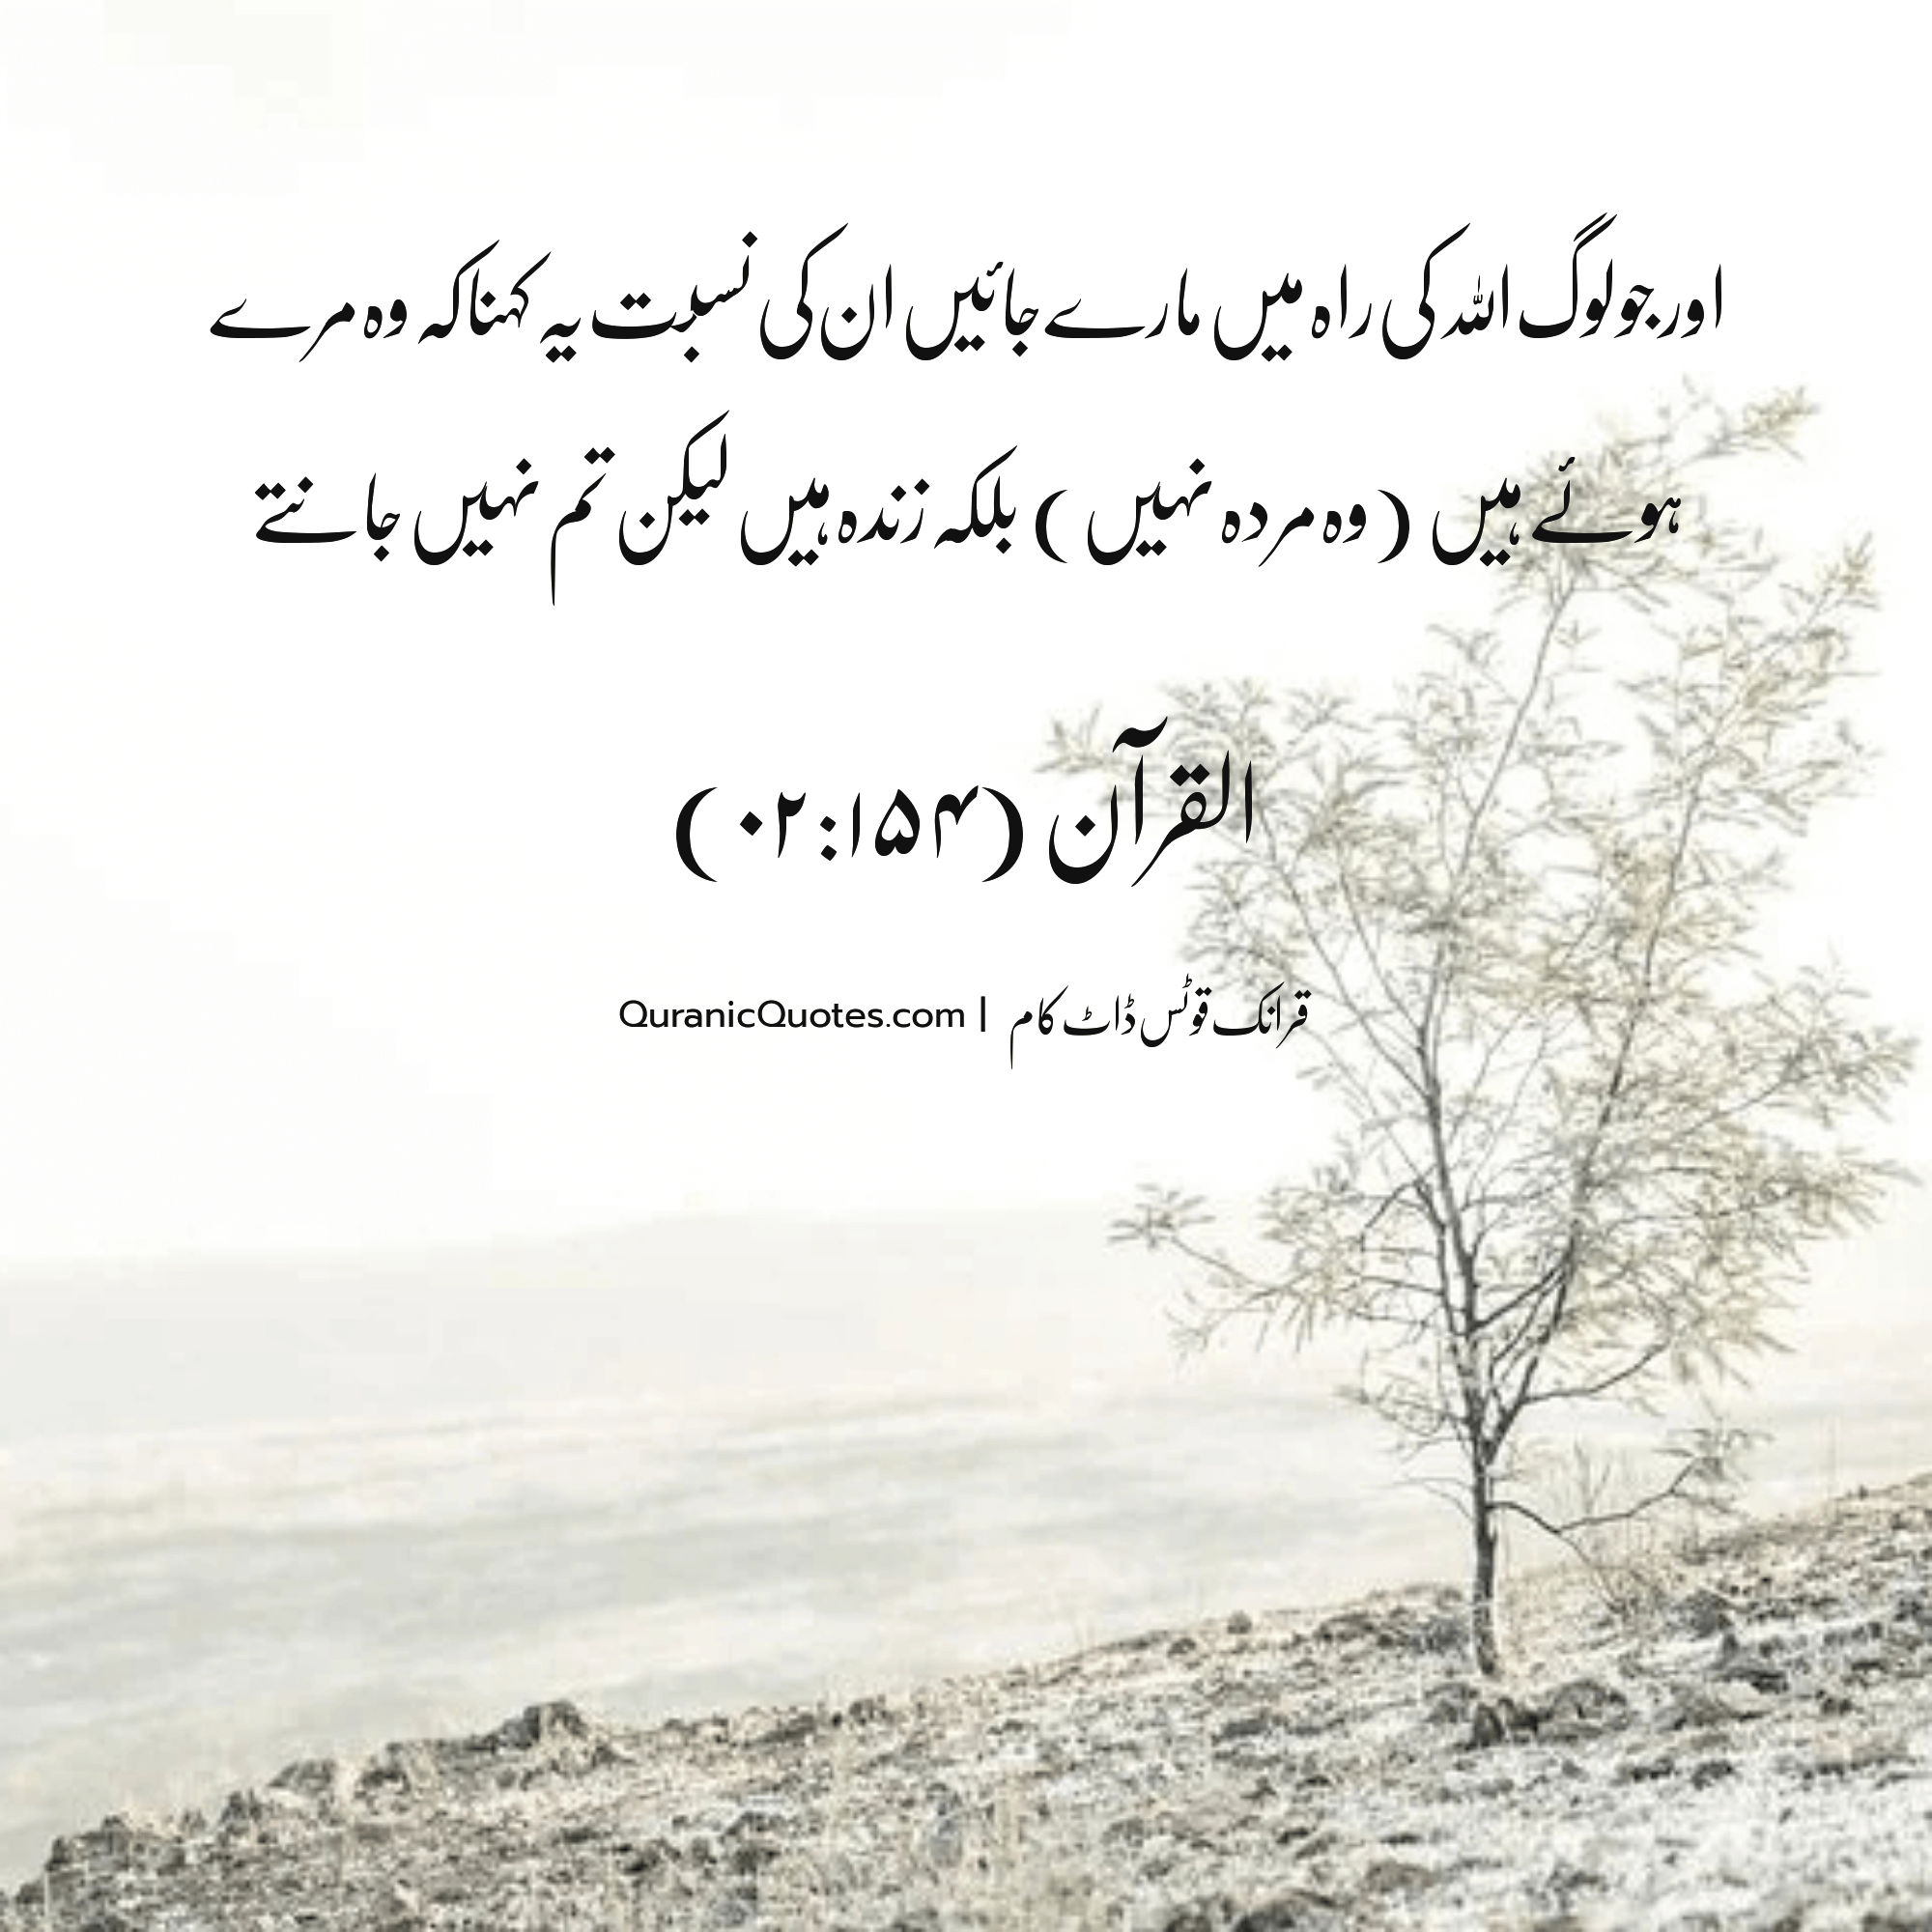 Quranic Quotes Urdu #207